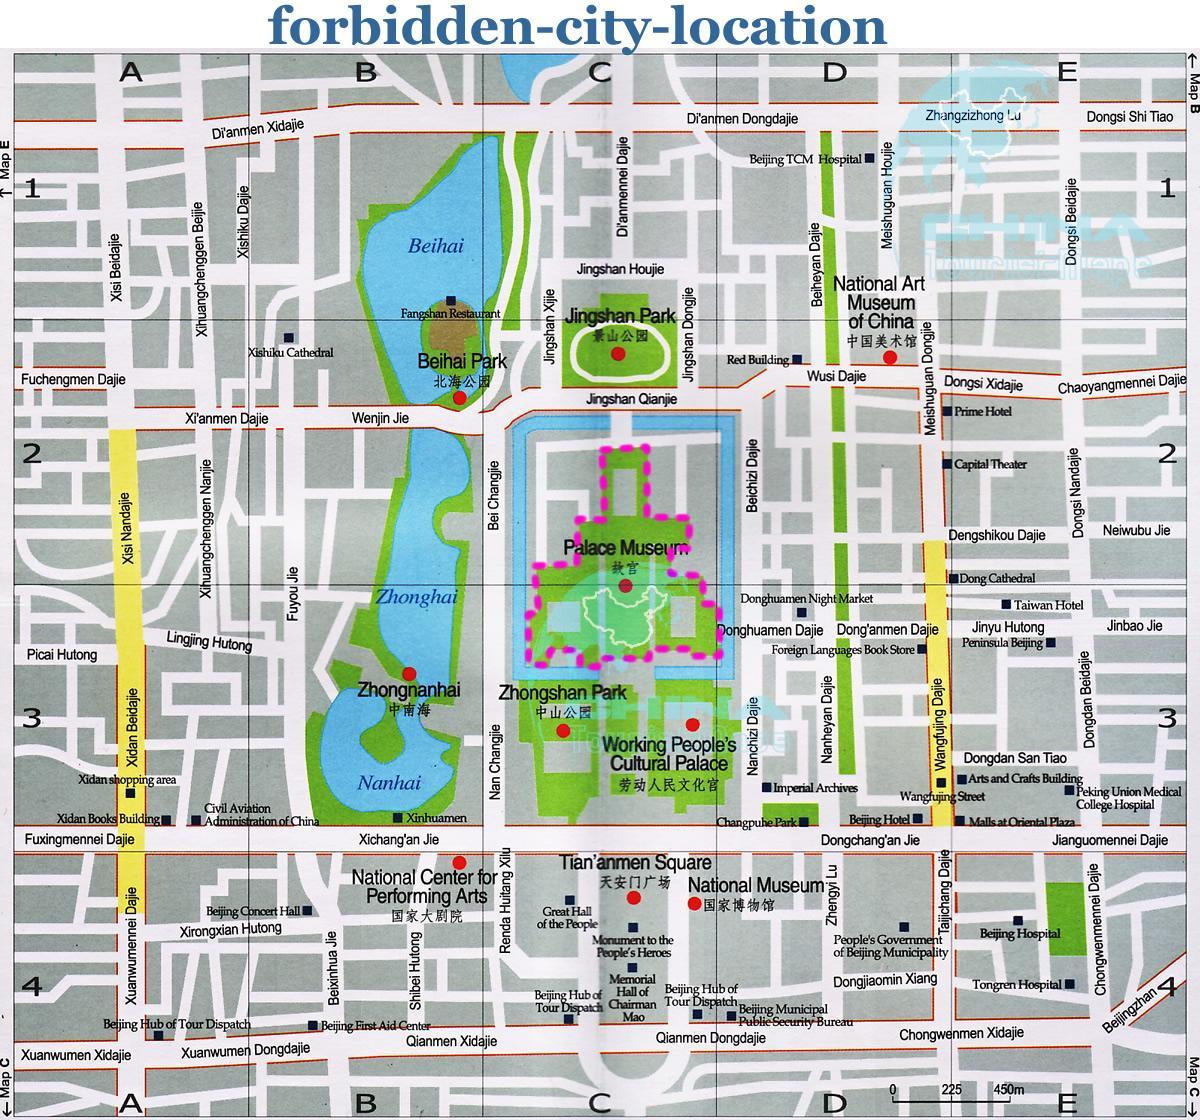 mappa della città proibita mappa dettagliata